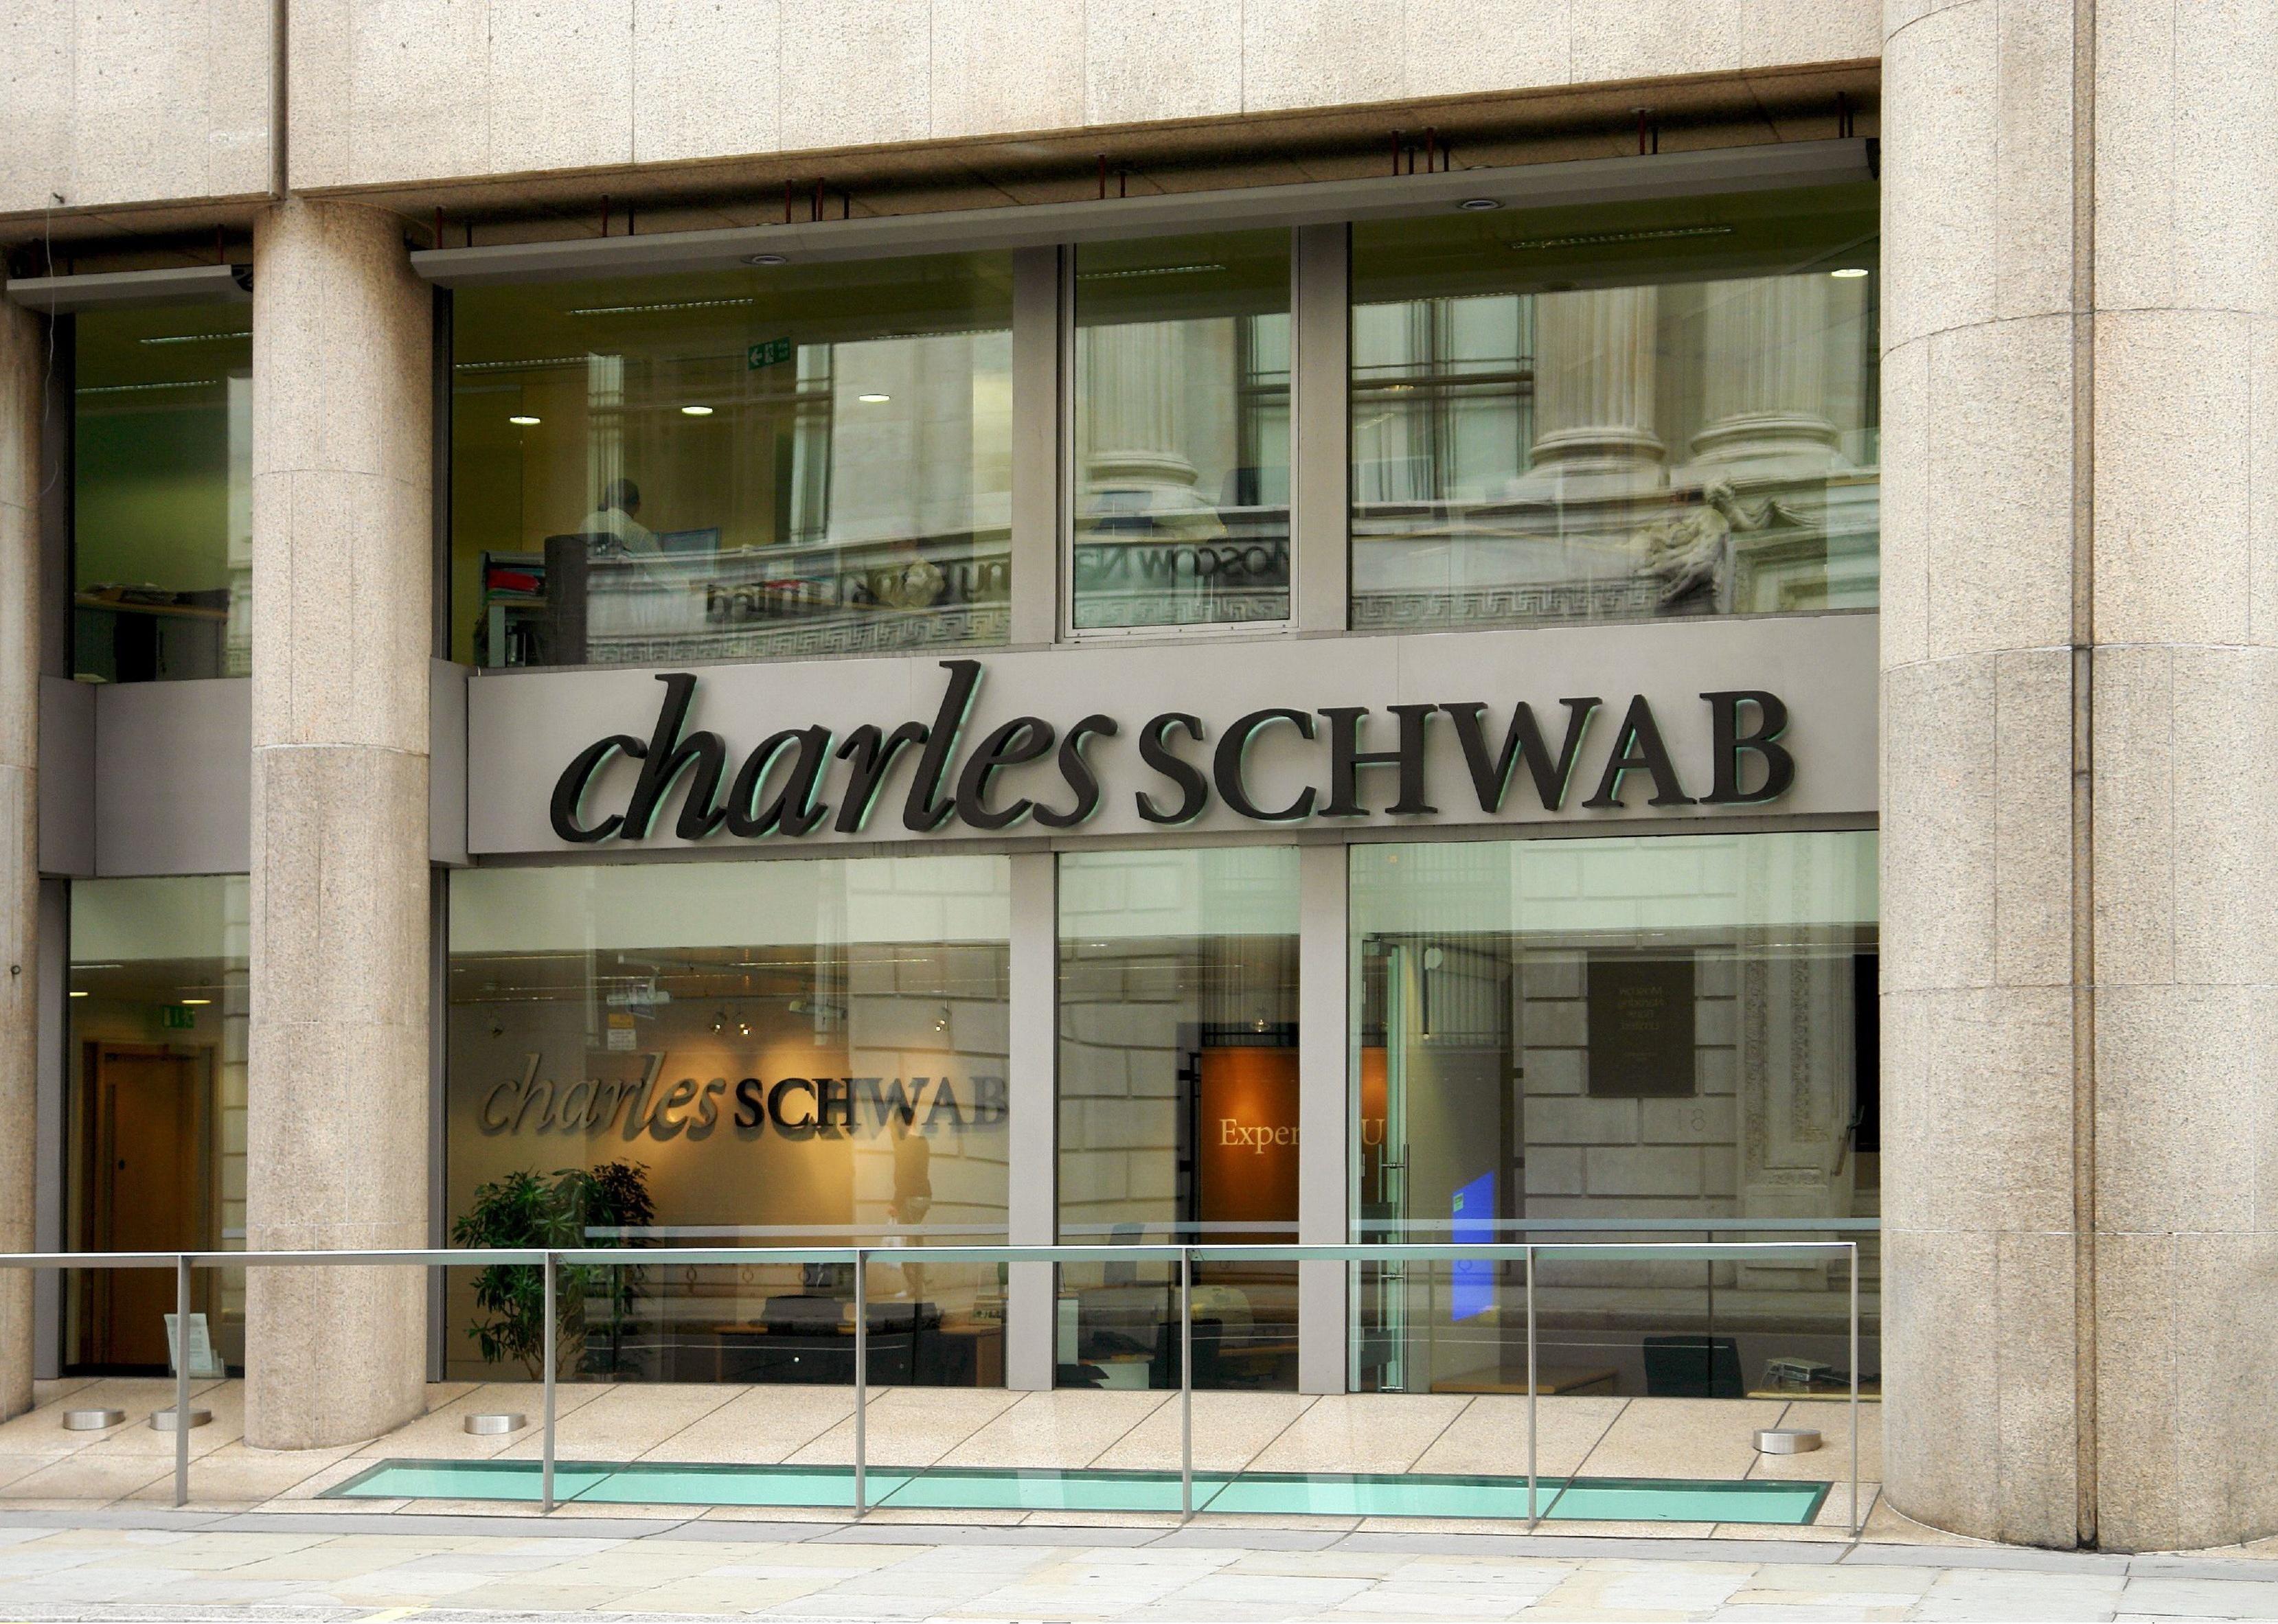 Charles Schwab headquarters.